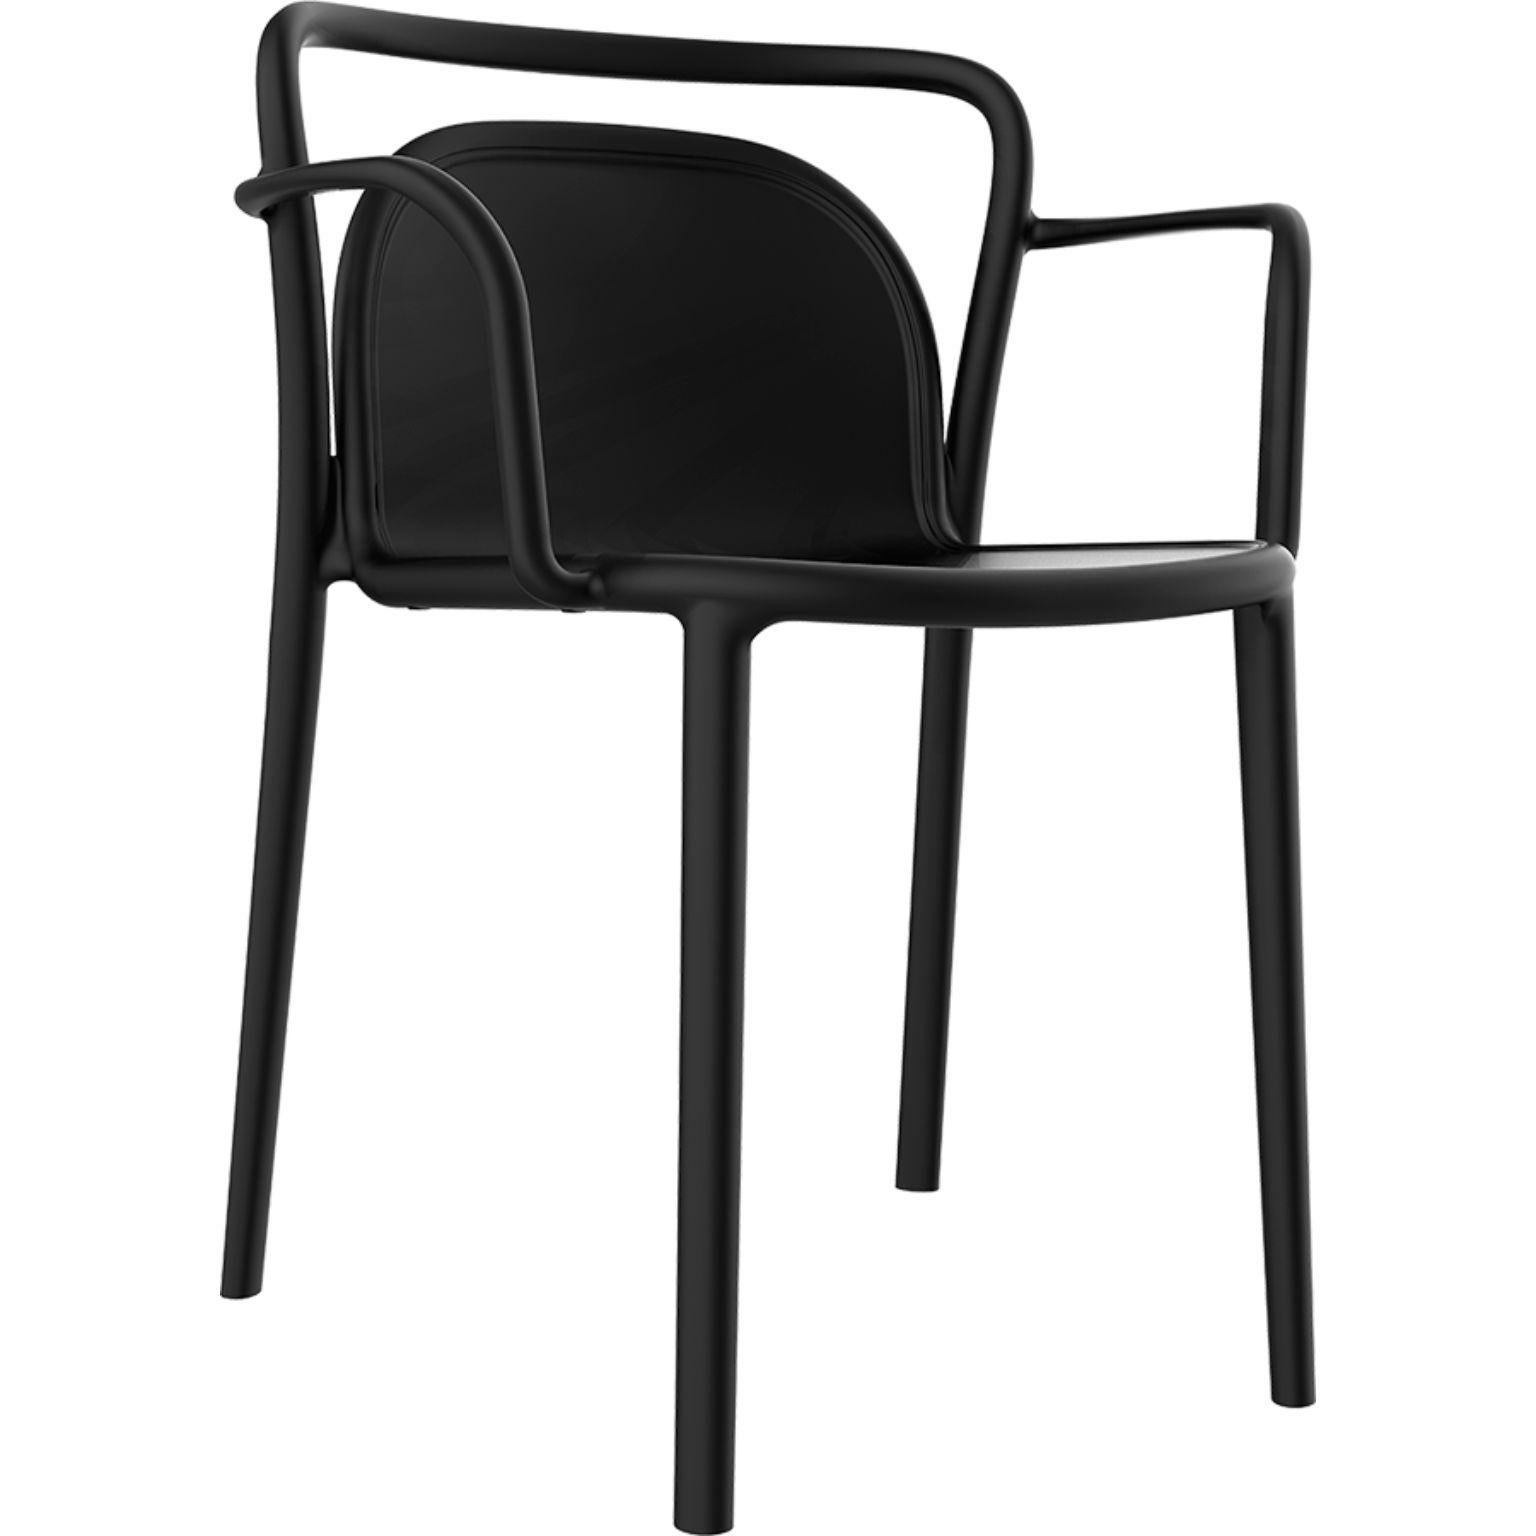 Set aus 4 schwarzen classe stühlen von MOWEE
Abmessungen: T52 x B52 x H77 cm (Sitzhöhe 45 cm)
MATERIAL: Polypropylenharz mit Glasfasern.
Gewicht: 4.6 kg
Auch in verschiedenen Farben erhältlich. Optional kann ein Kissen hinzugefügt werden.